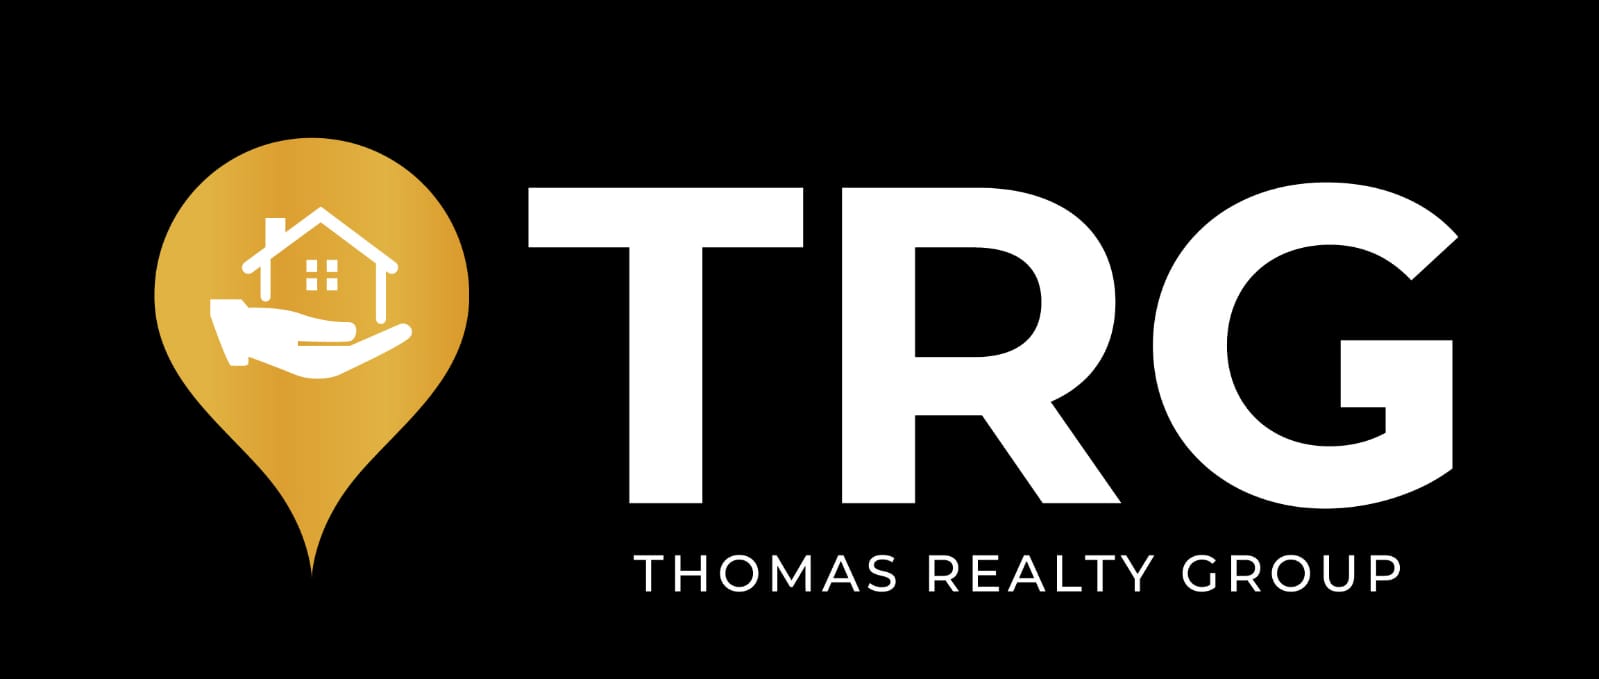 Thomas Realty Group